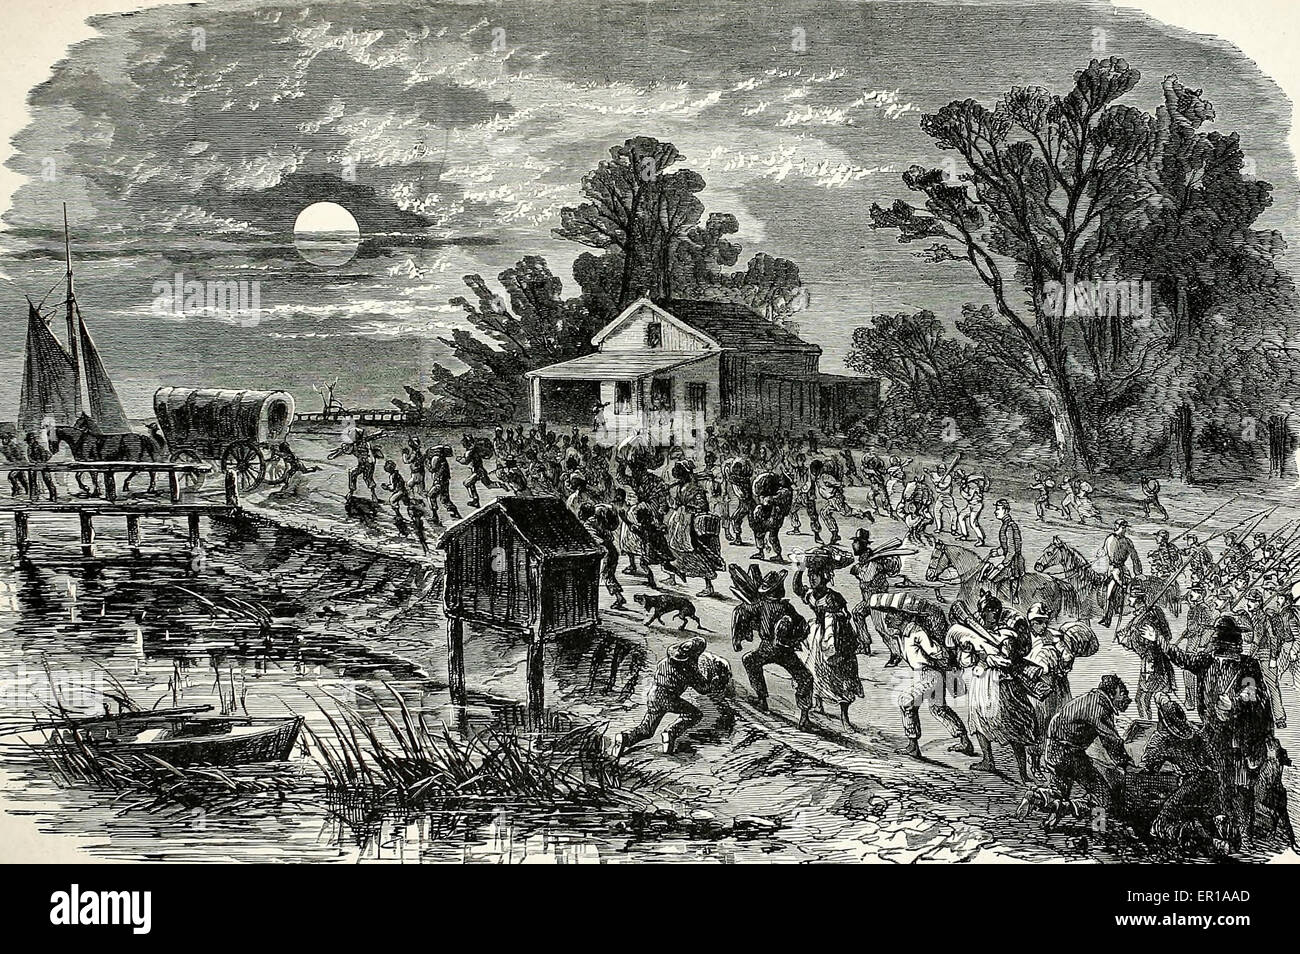 Stampede d'esclaves à Fort Monroe, Virginie. La forteresse de la liberté de la contrebande au début de la guerre Guerre civile USA Banque D'Images